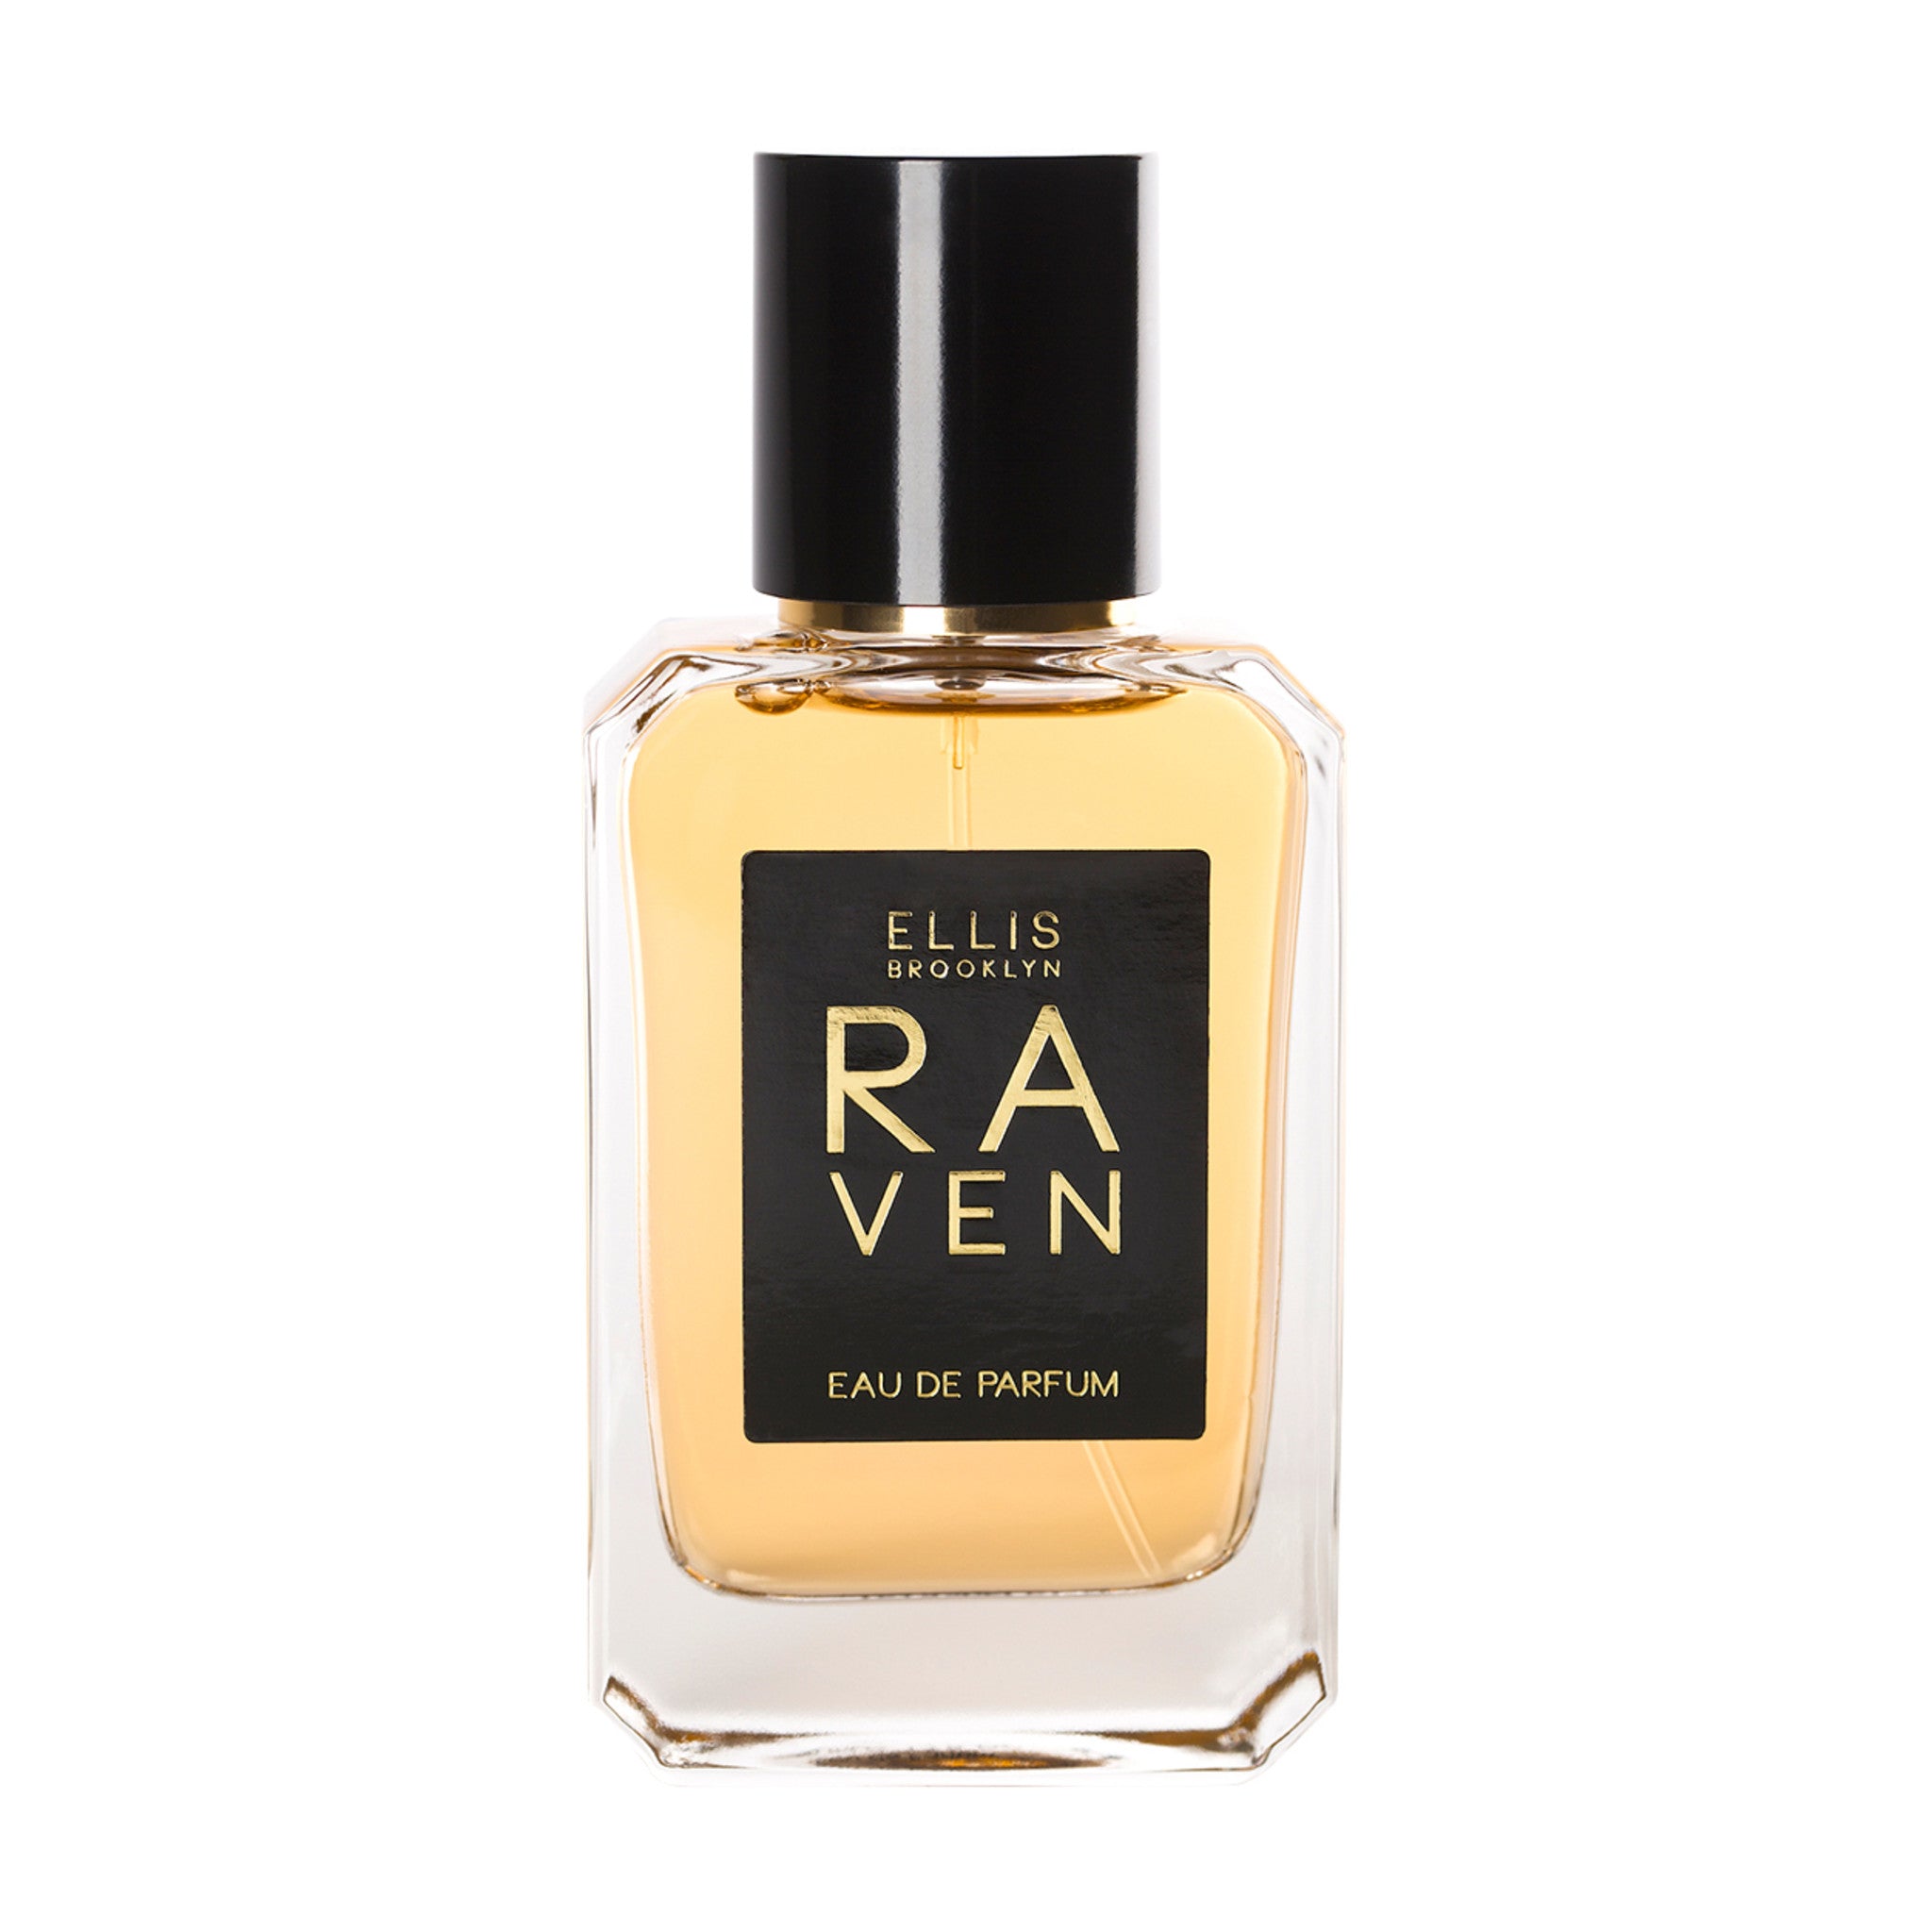 Raven Eau de Parfum main image.